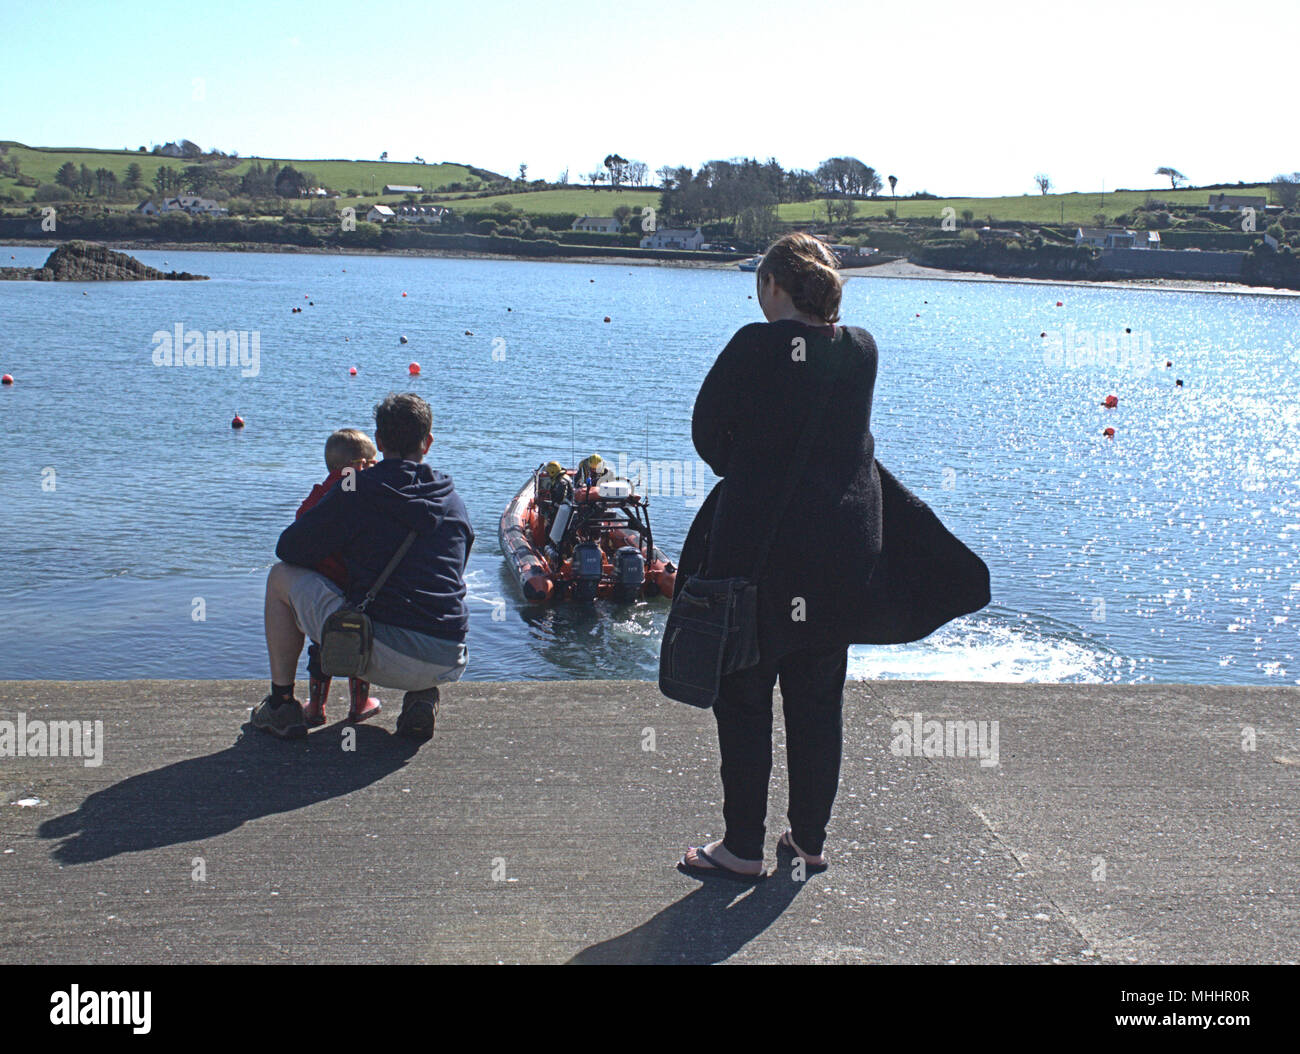 Familie Paar auf Urlaub mit einem kleinen Jungen Aufpassen der irischen Küstenwache Rettungsboot vom Ende einer Anlegestelle in Irland eingeführt wird. Stockfoto